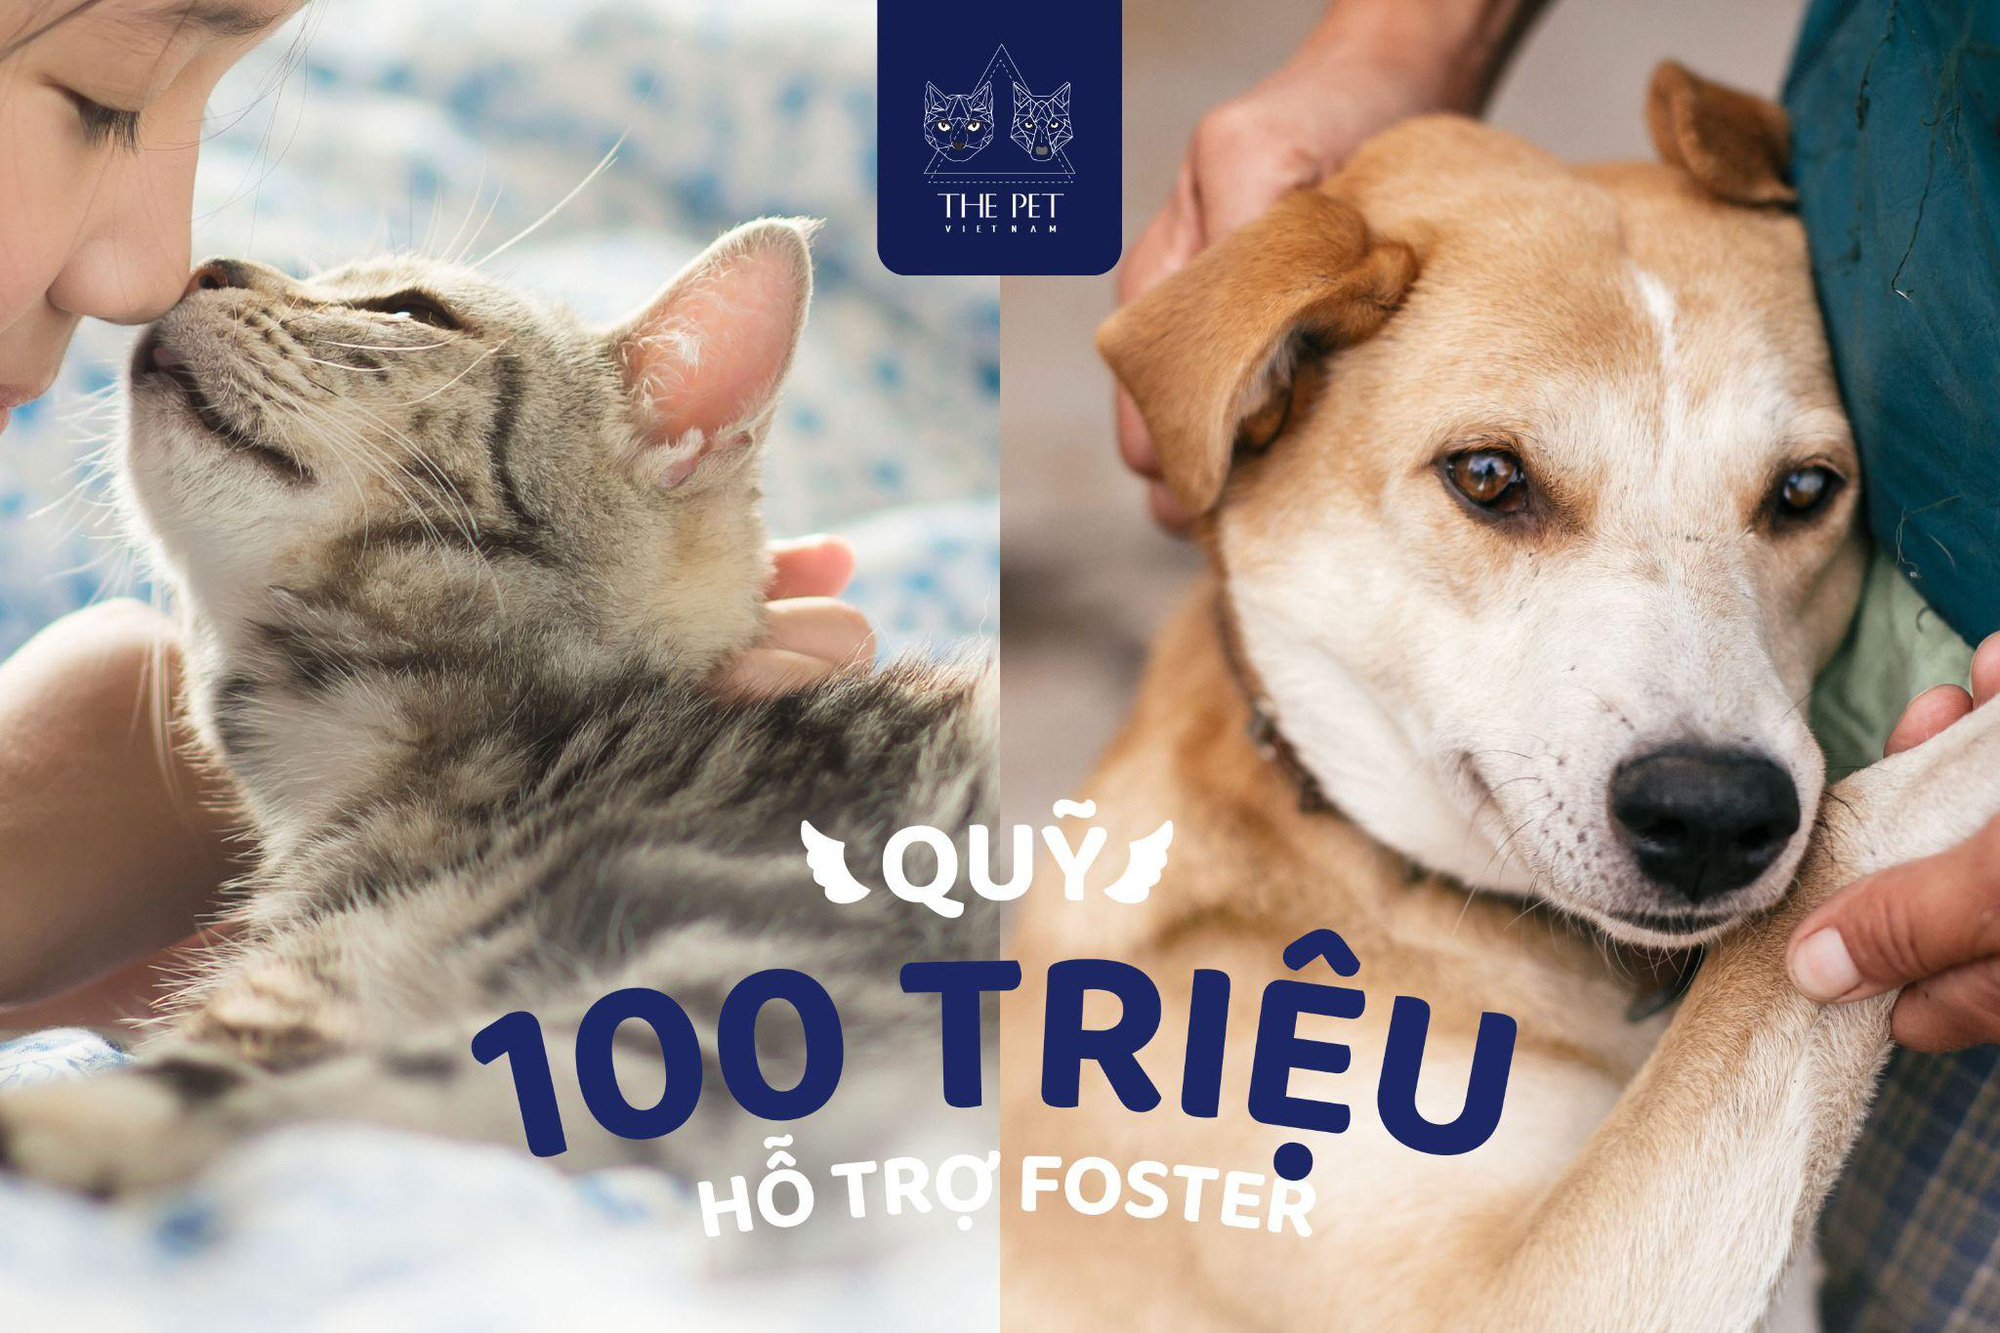 Thepet.vn lập quỹ 100 triệu đồng tặng pate tươi miễn phí cho chó mèo cơ nhỡ tại Sài Gòn - Ảnh 3.